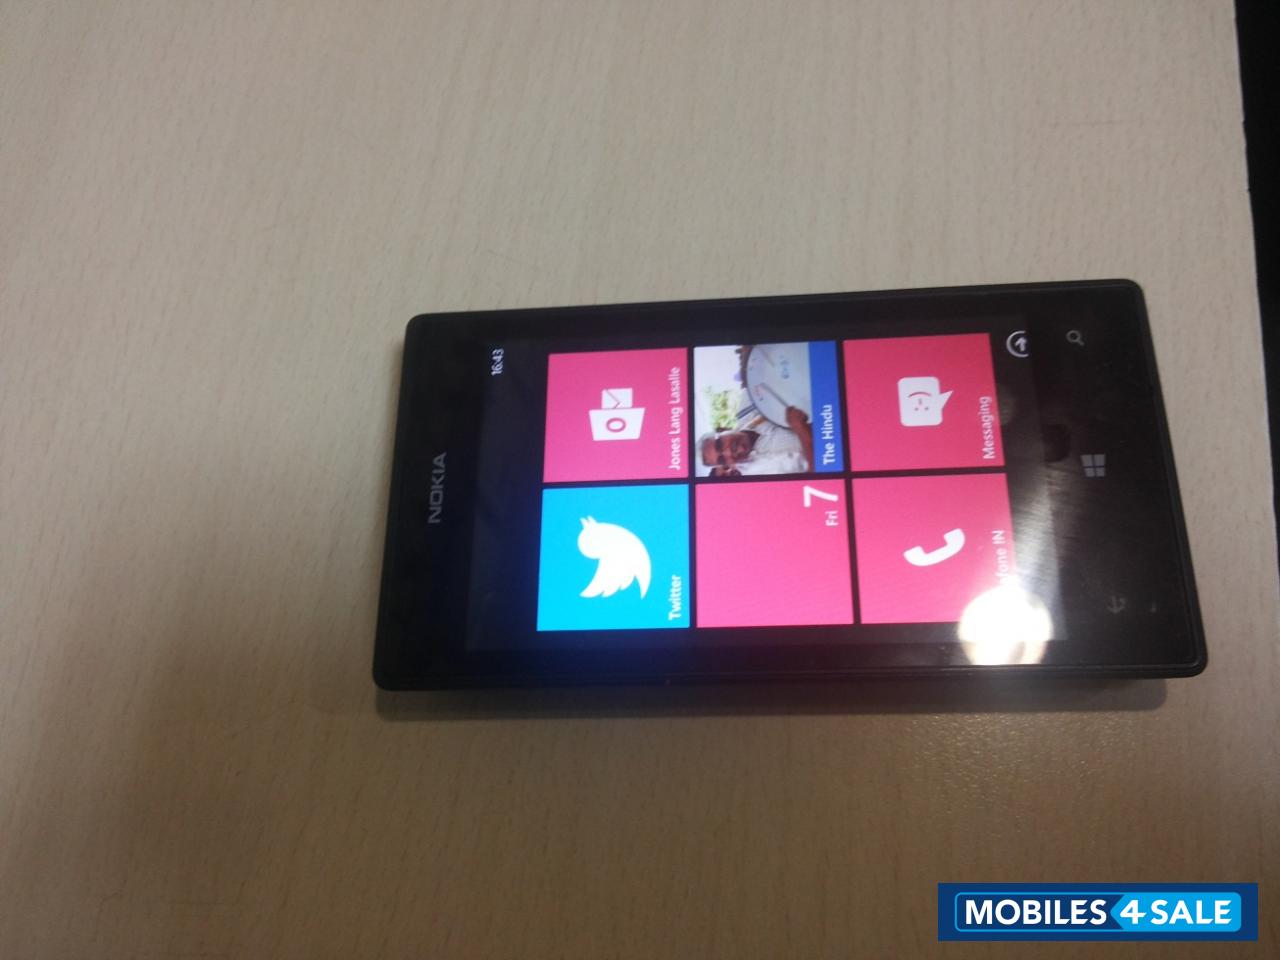 Black Nokia Lumia 525